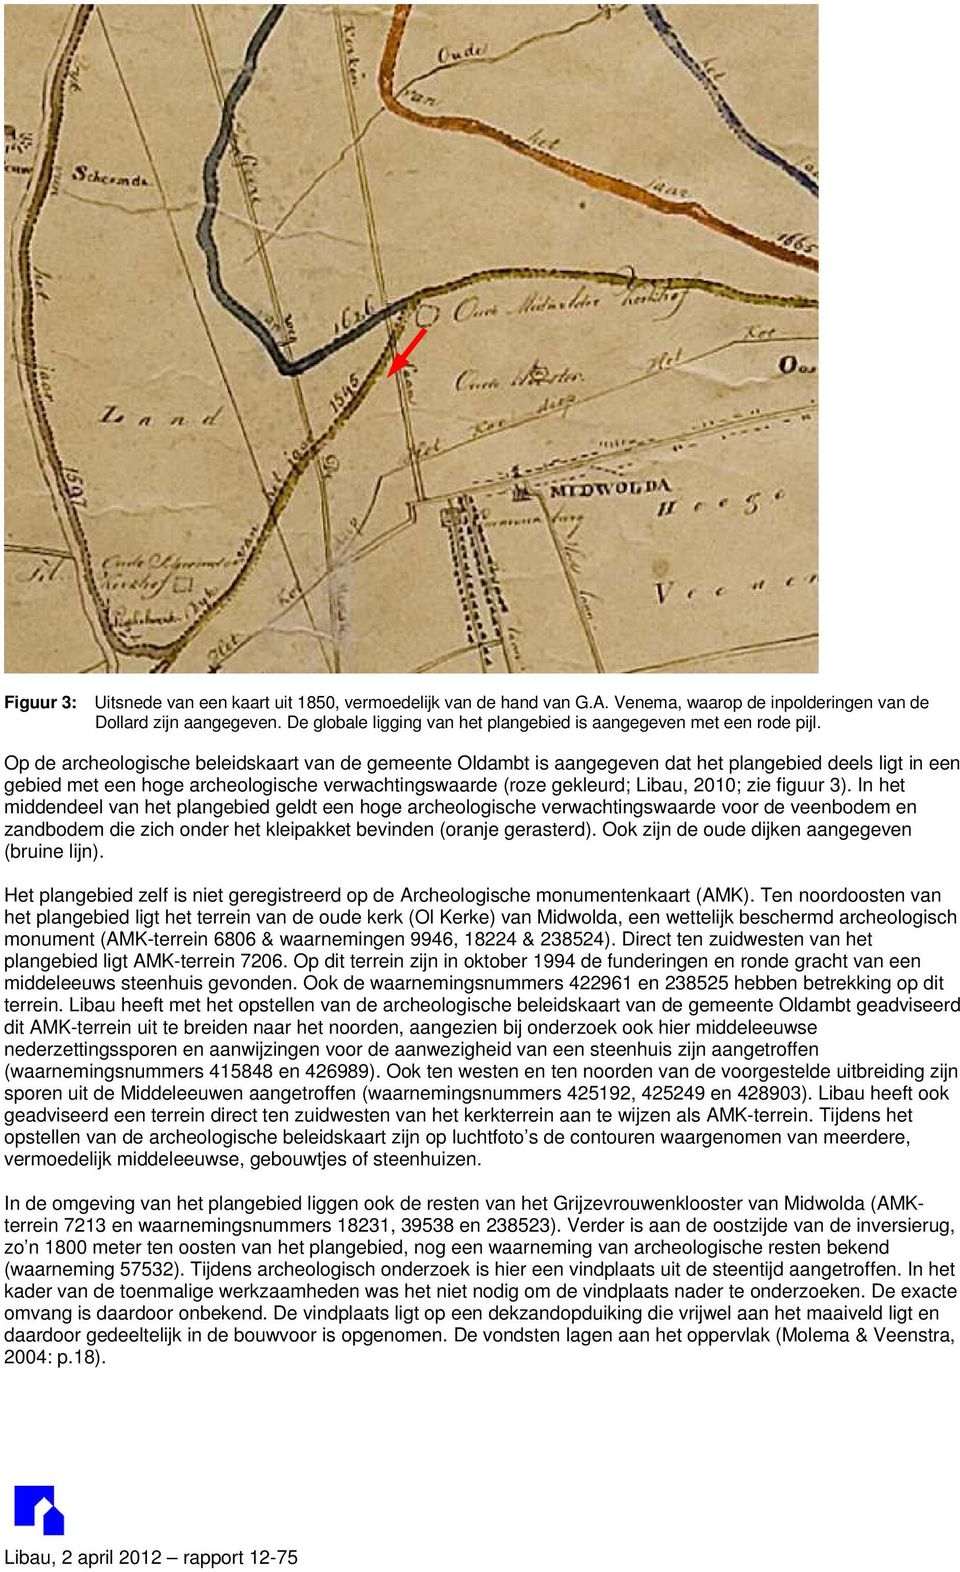 Op de archeologische beleidskaart van de gemeente Oldambt is aangegeven dat het plangebied deels ligt in een gebied met een hoge archeologische verwachtingswaarde (roze gekleurd; Libau, 2010; zie